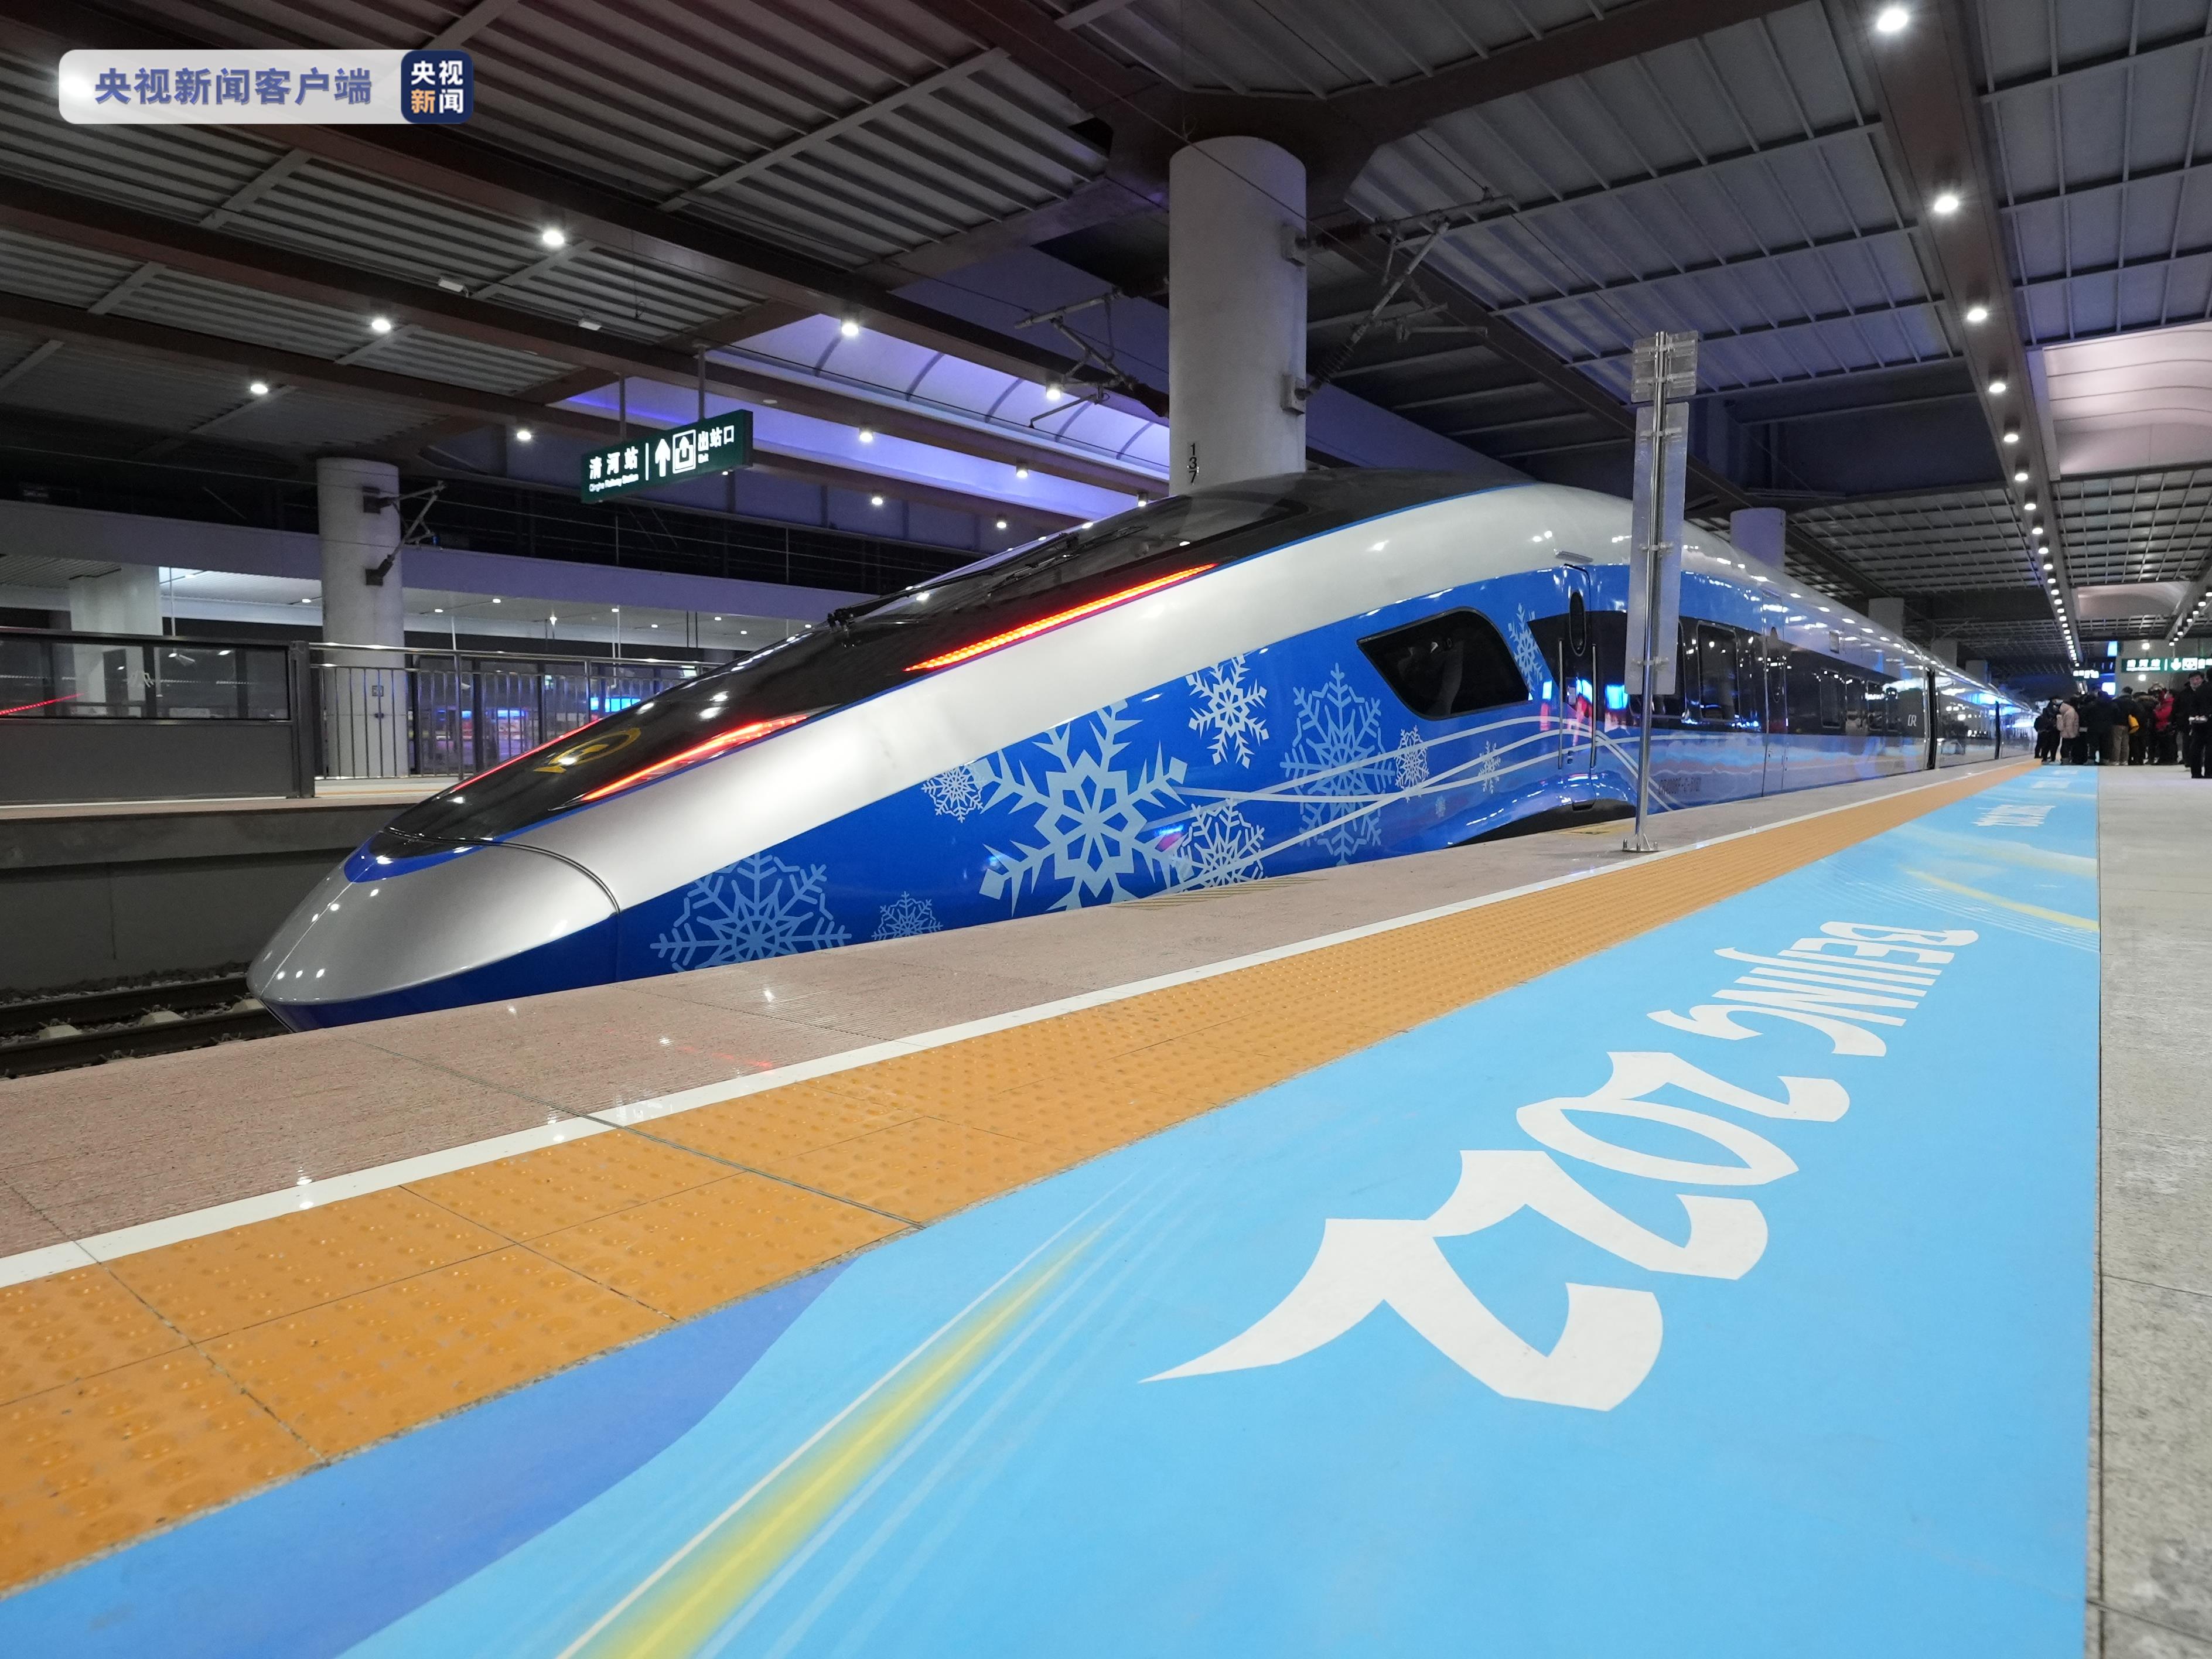 出發！今起京張高鐵冬奧列車開啟賽時運輸服務